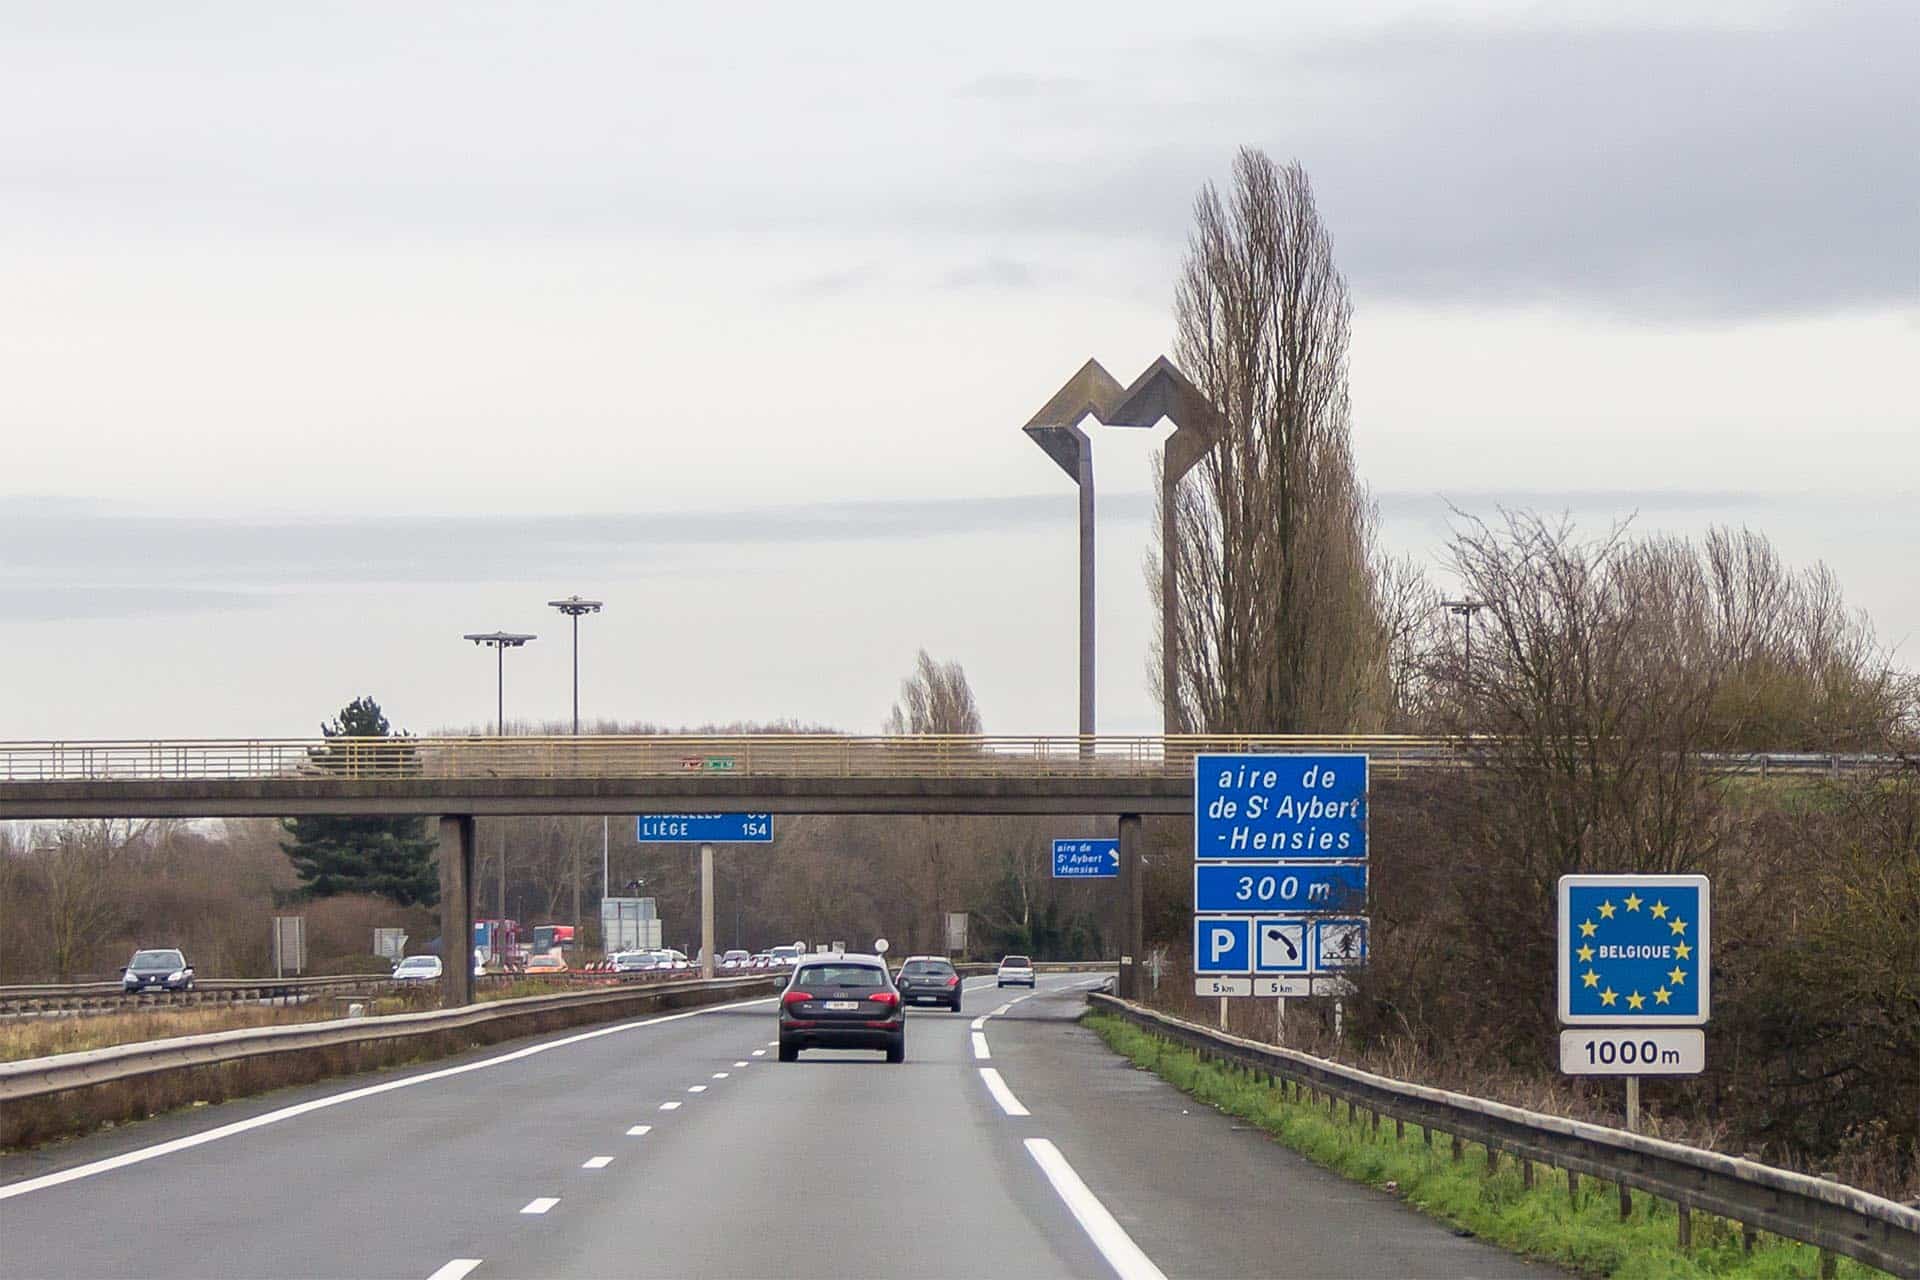 Hay dos países de la Unión Europea que plantean subir a 150 km/h el límite en autopistas